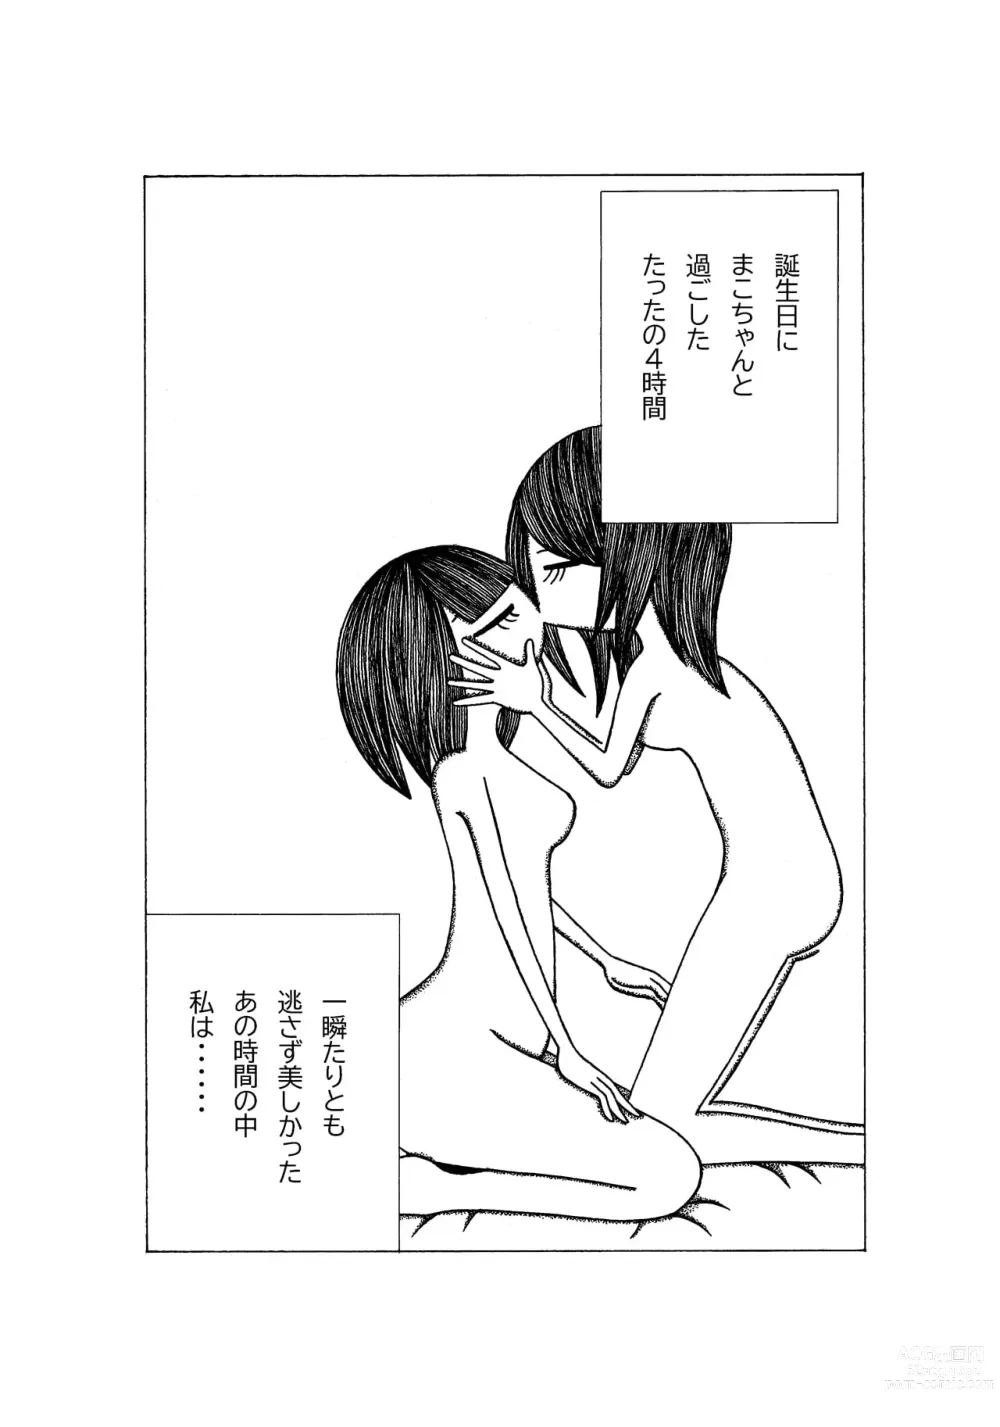 Page 2 of doujinshi Tokubetsuna Tanjoubi no Dekigoto.